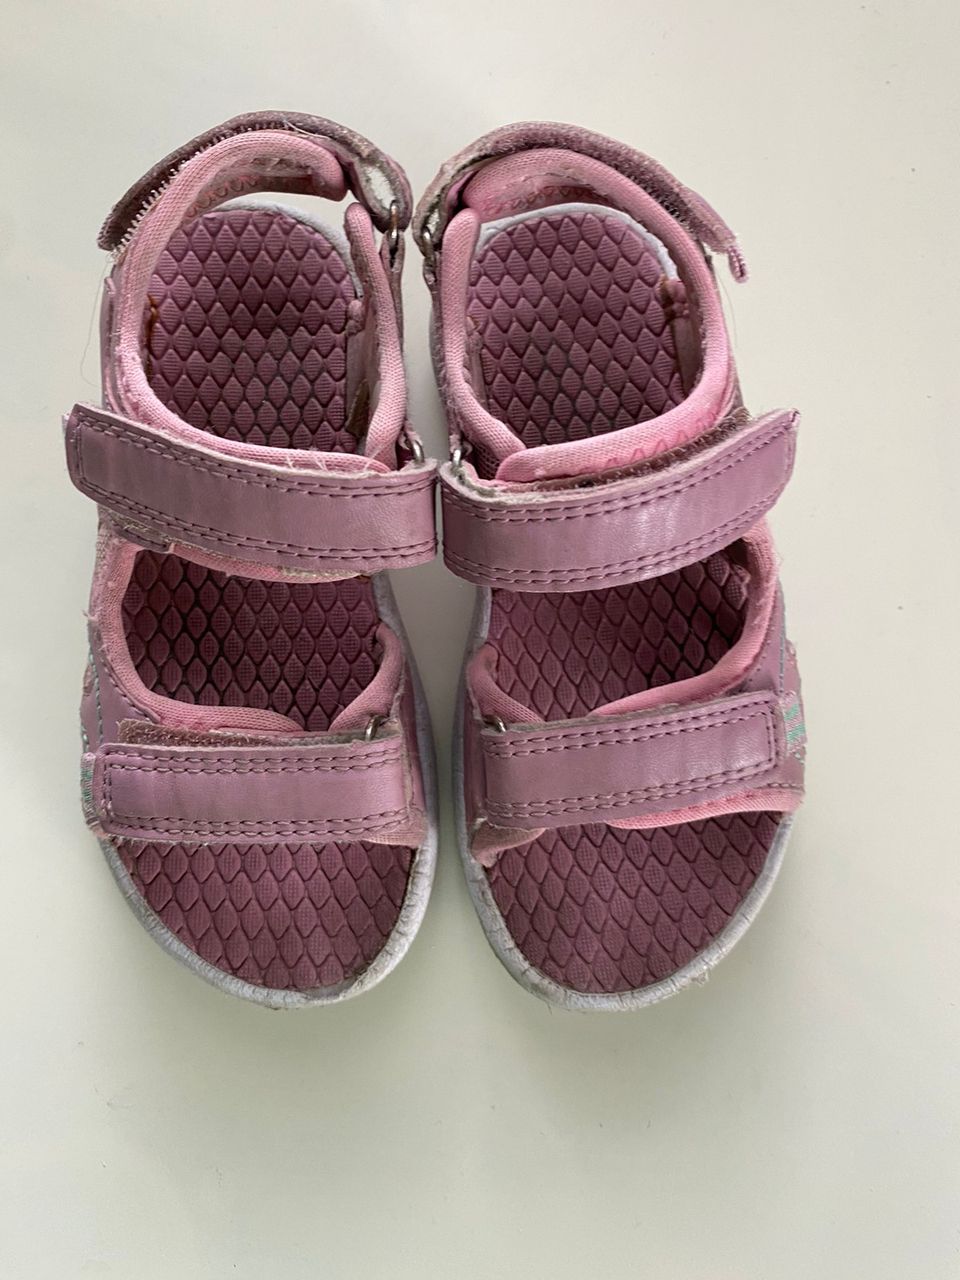 Pinkki sandaalit koko 27